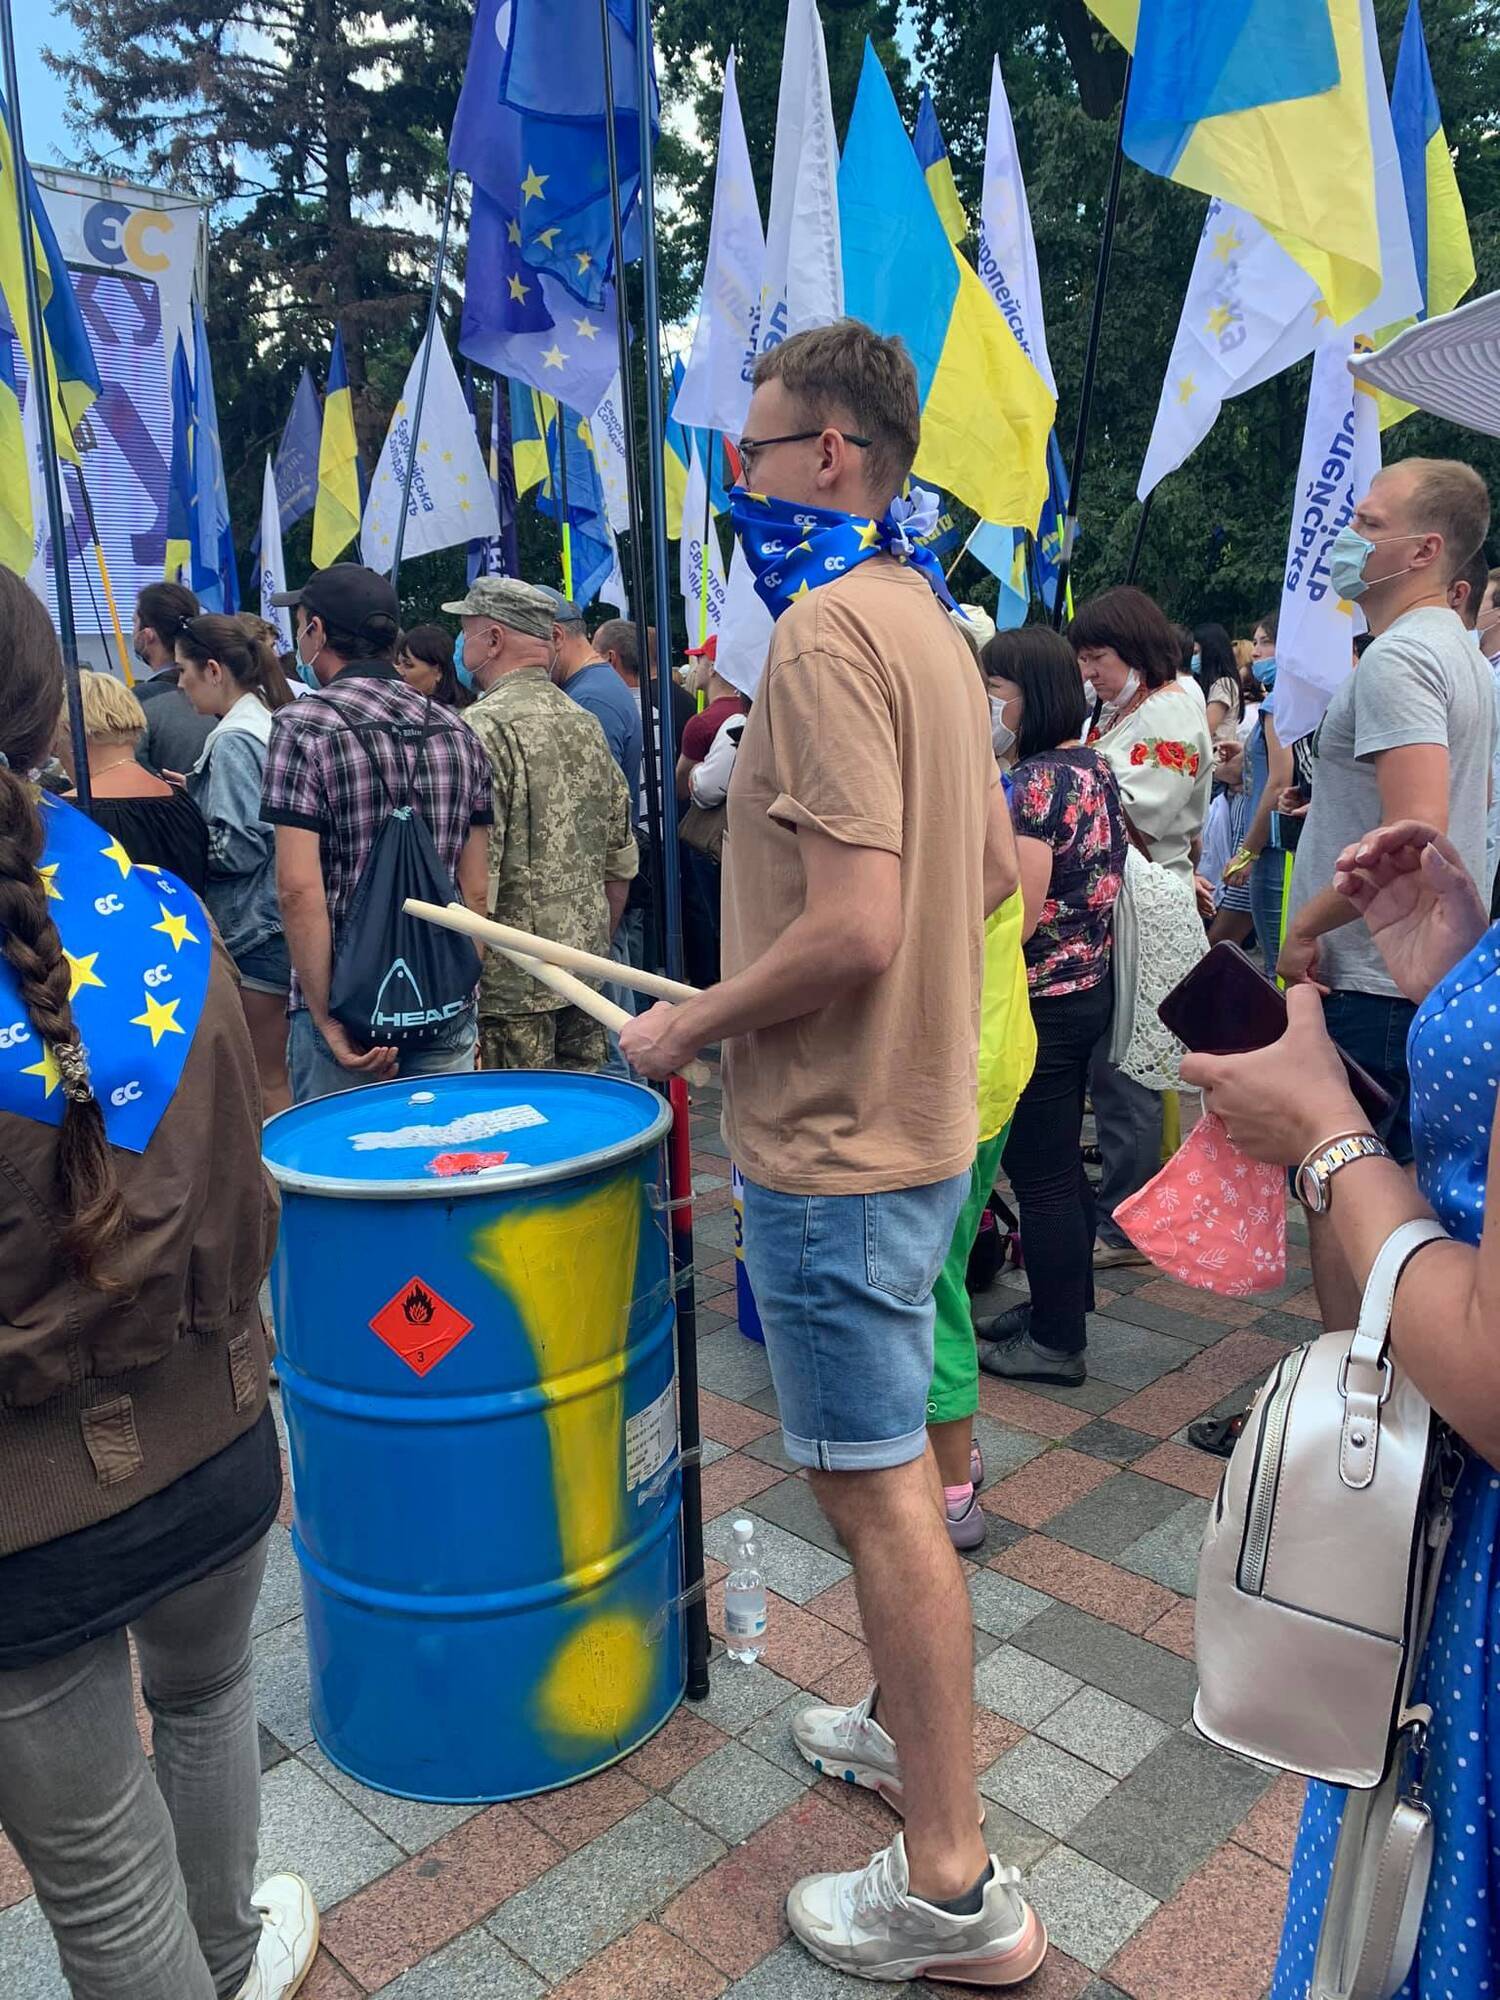 Під Радою збирався численний мітинг на захист української мови